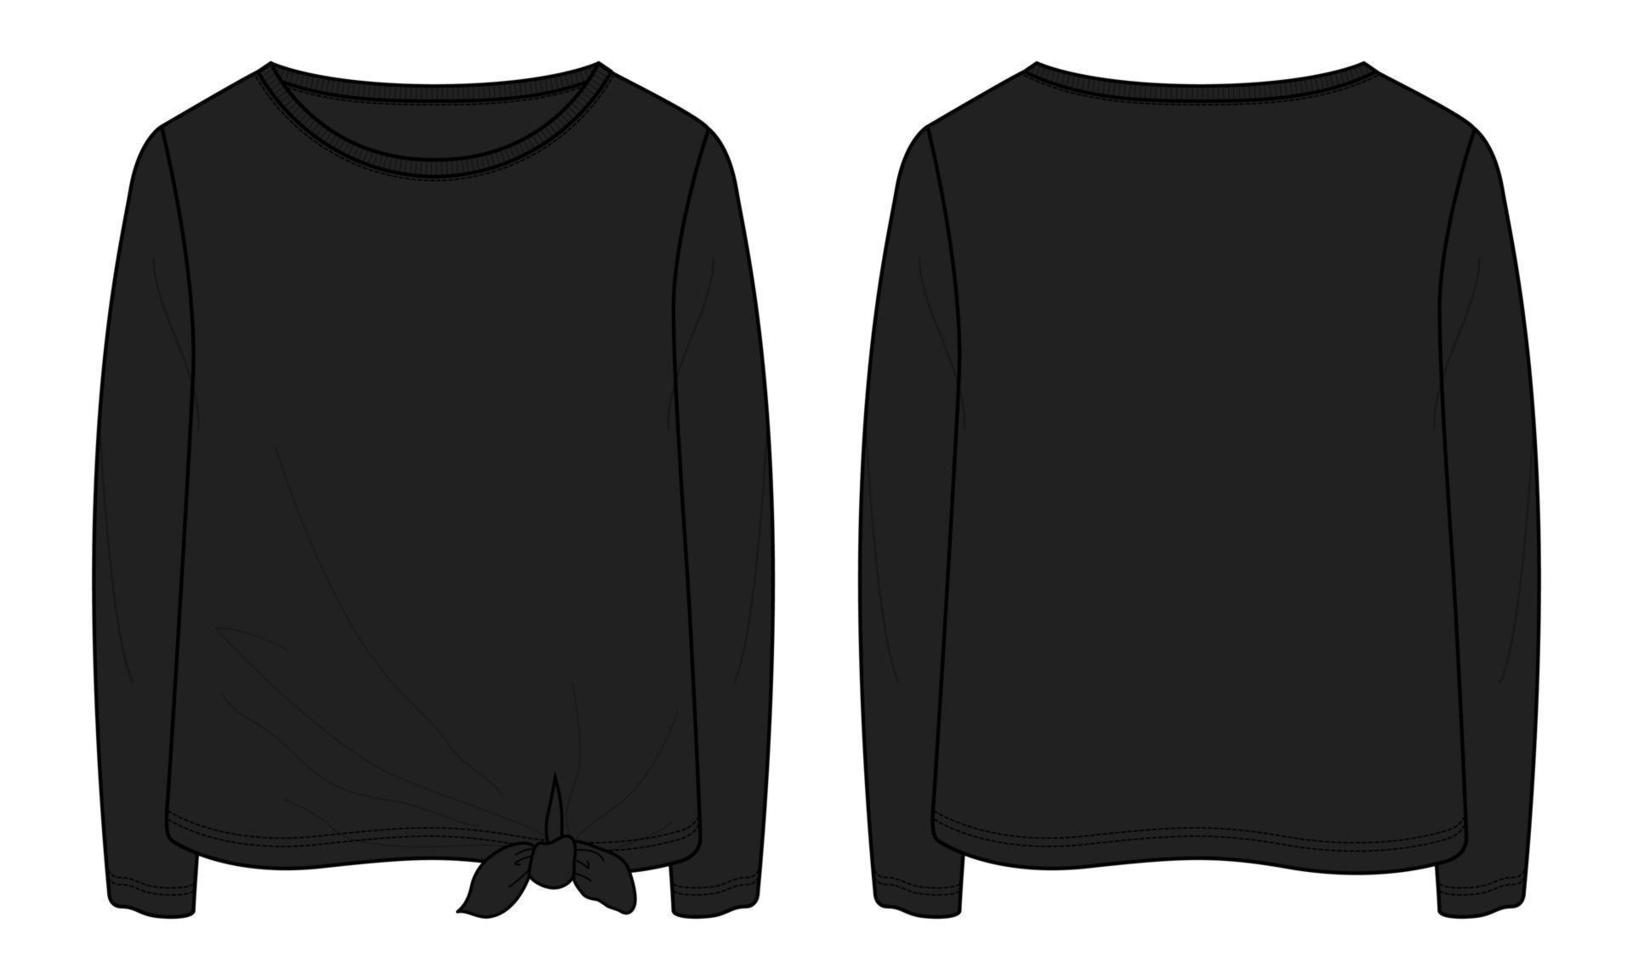 langärmliges t-shirt tops technische mode flache skizze vektor schwarze farbvorlage für damen